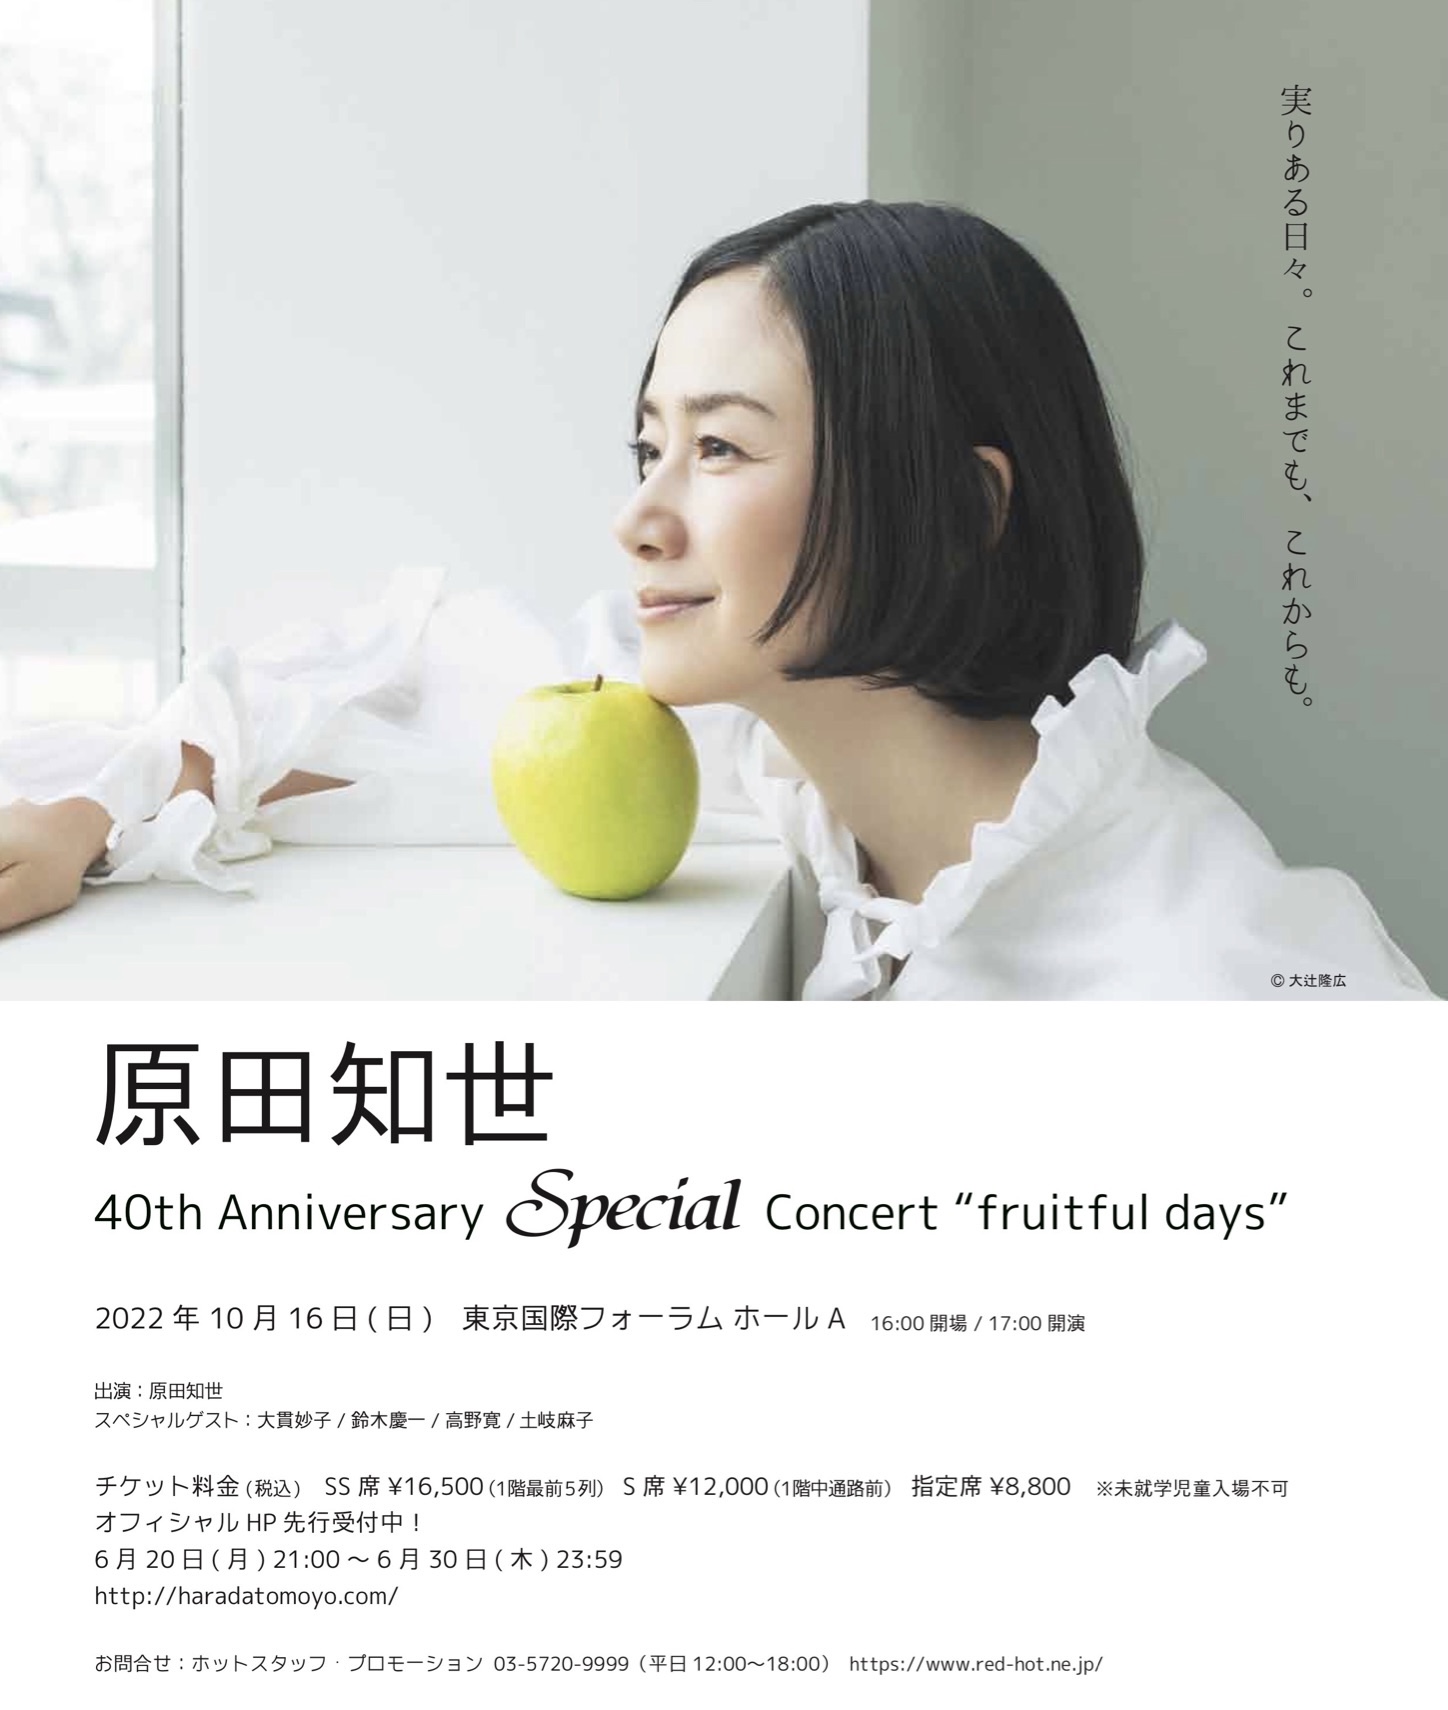 原田知世さんのデビュー40周年記念スペシャル・コンサートにゲスト出演 